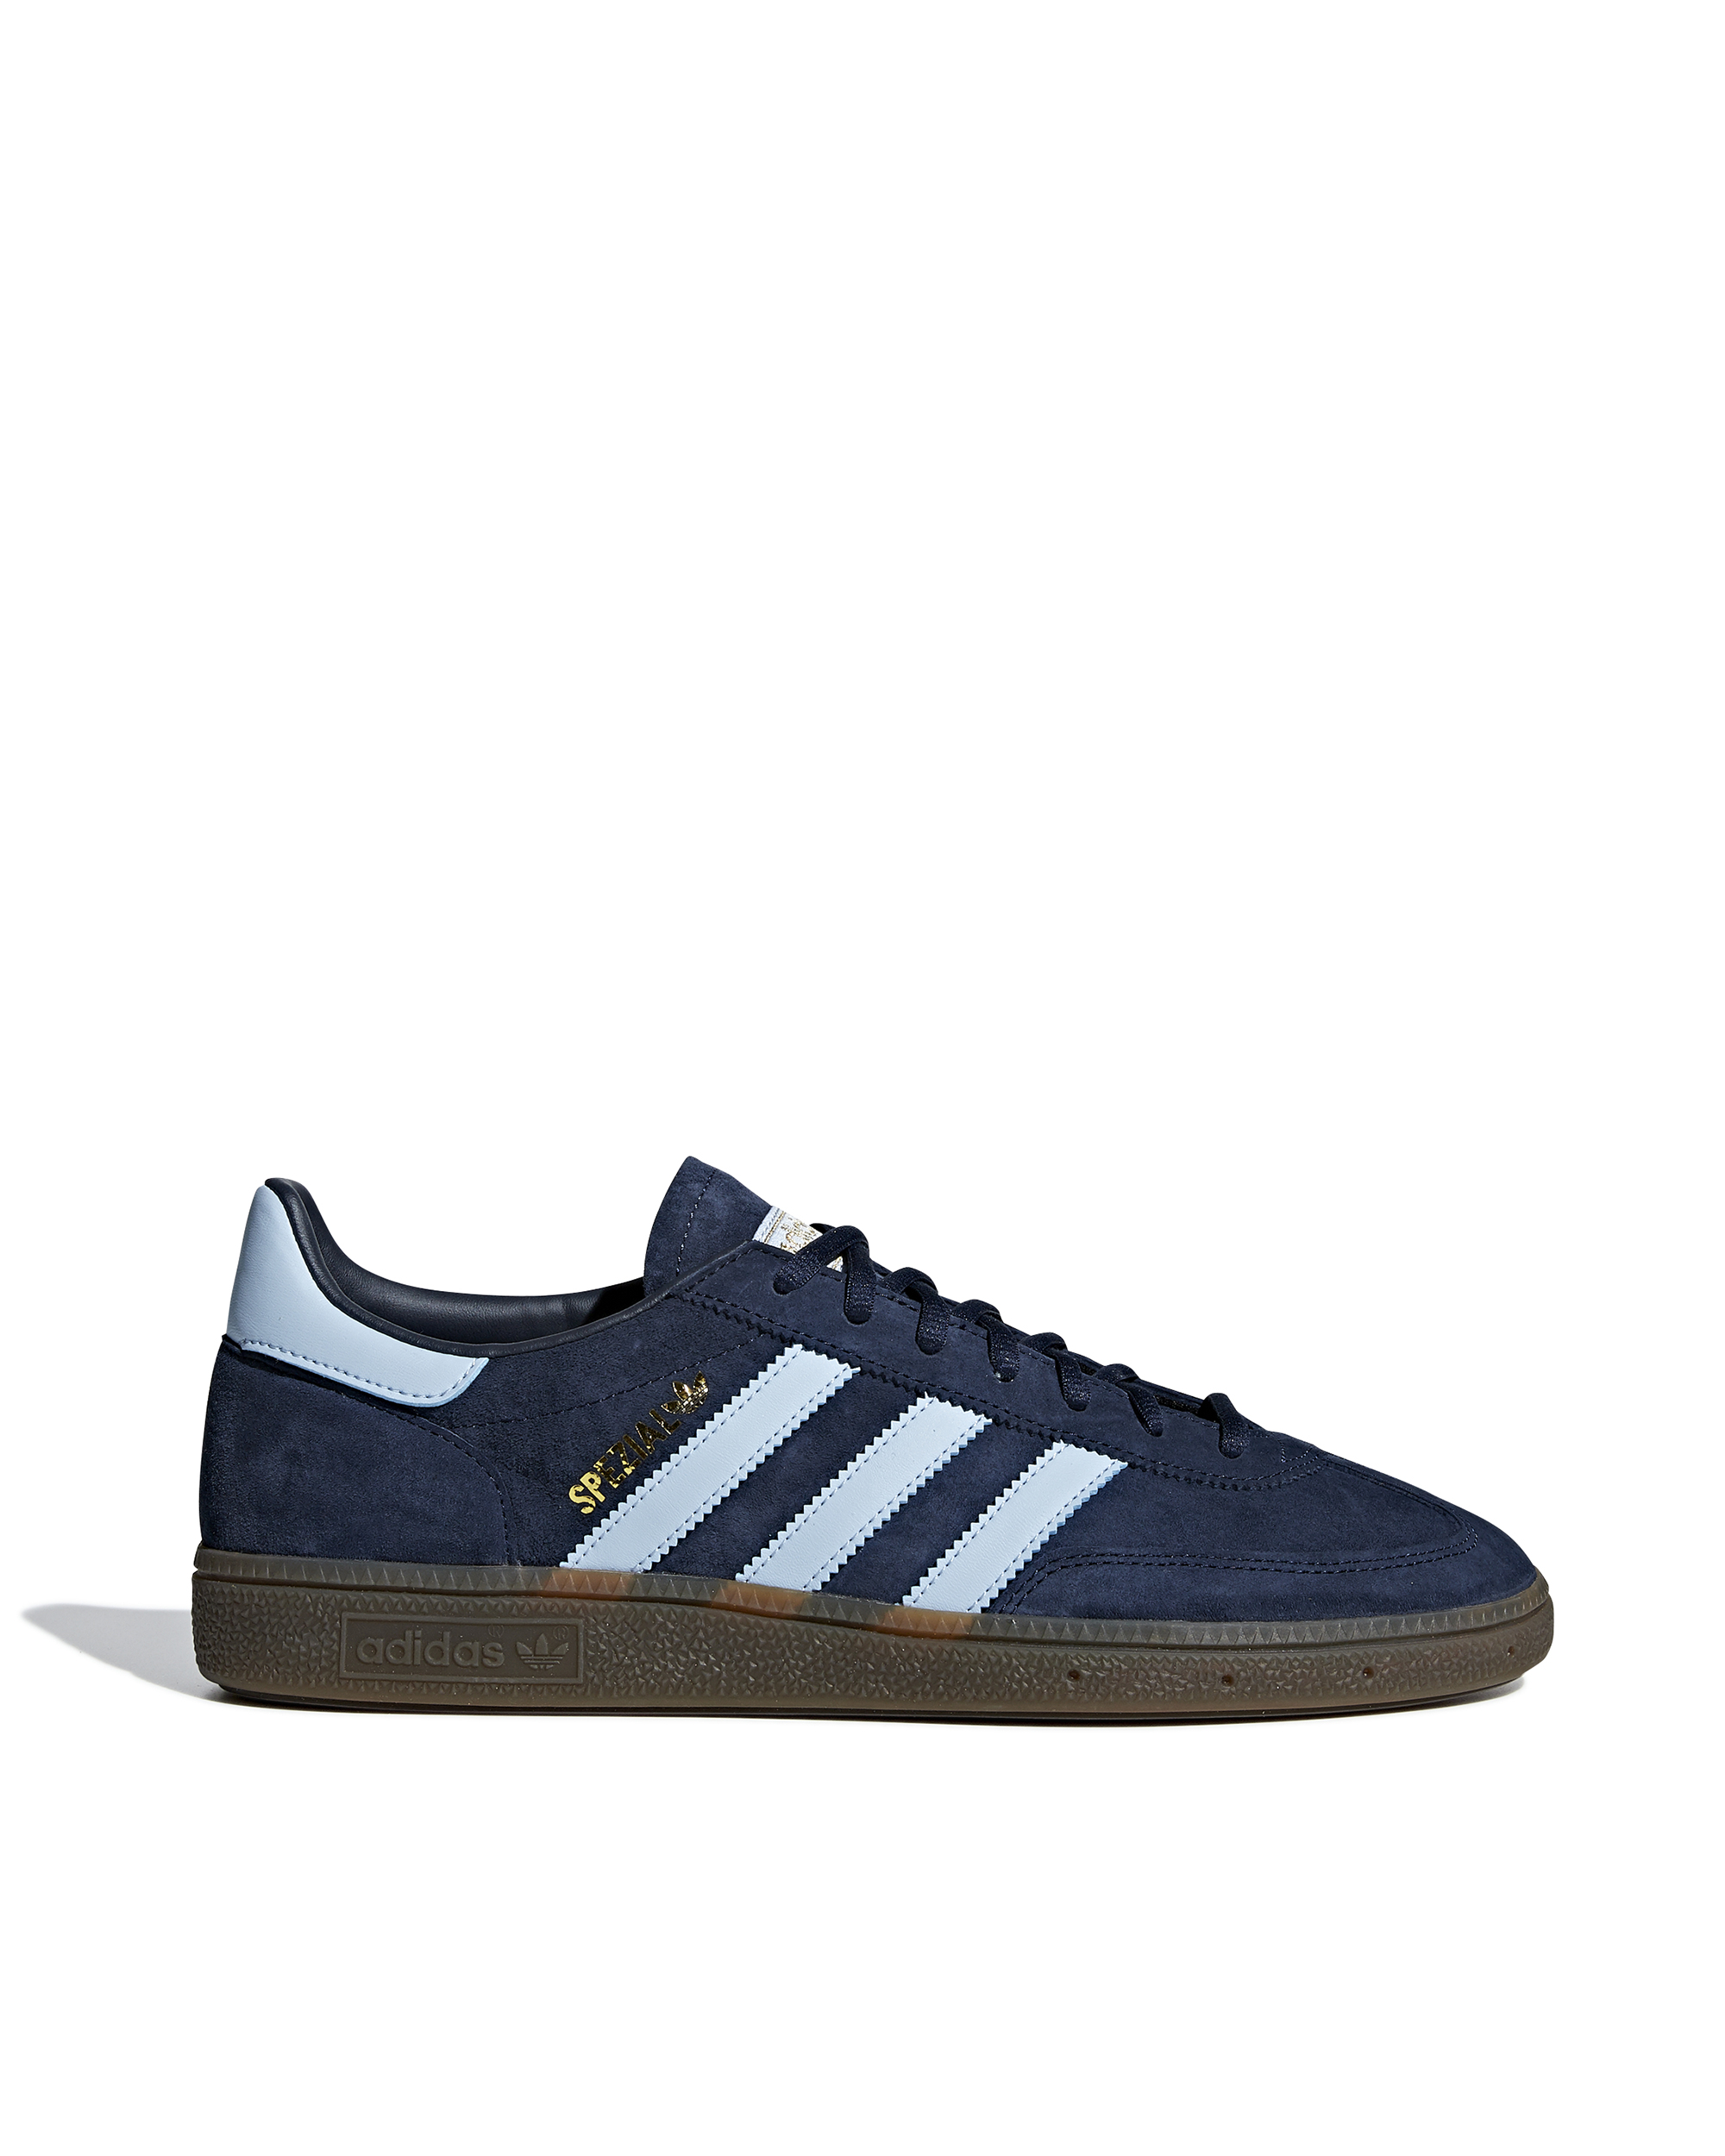 Shop Adidas Originals Sneaker Handball Special Blue In Conavy/clesky/gum5